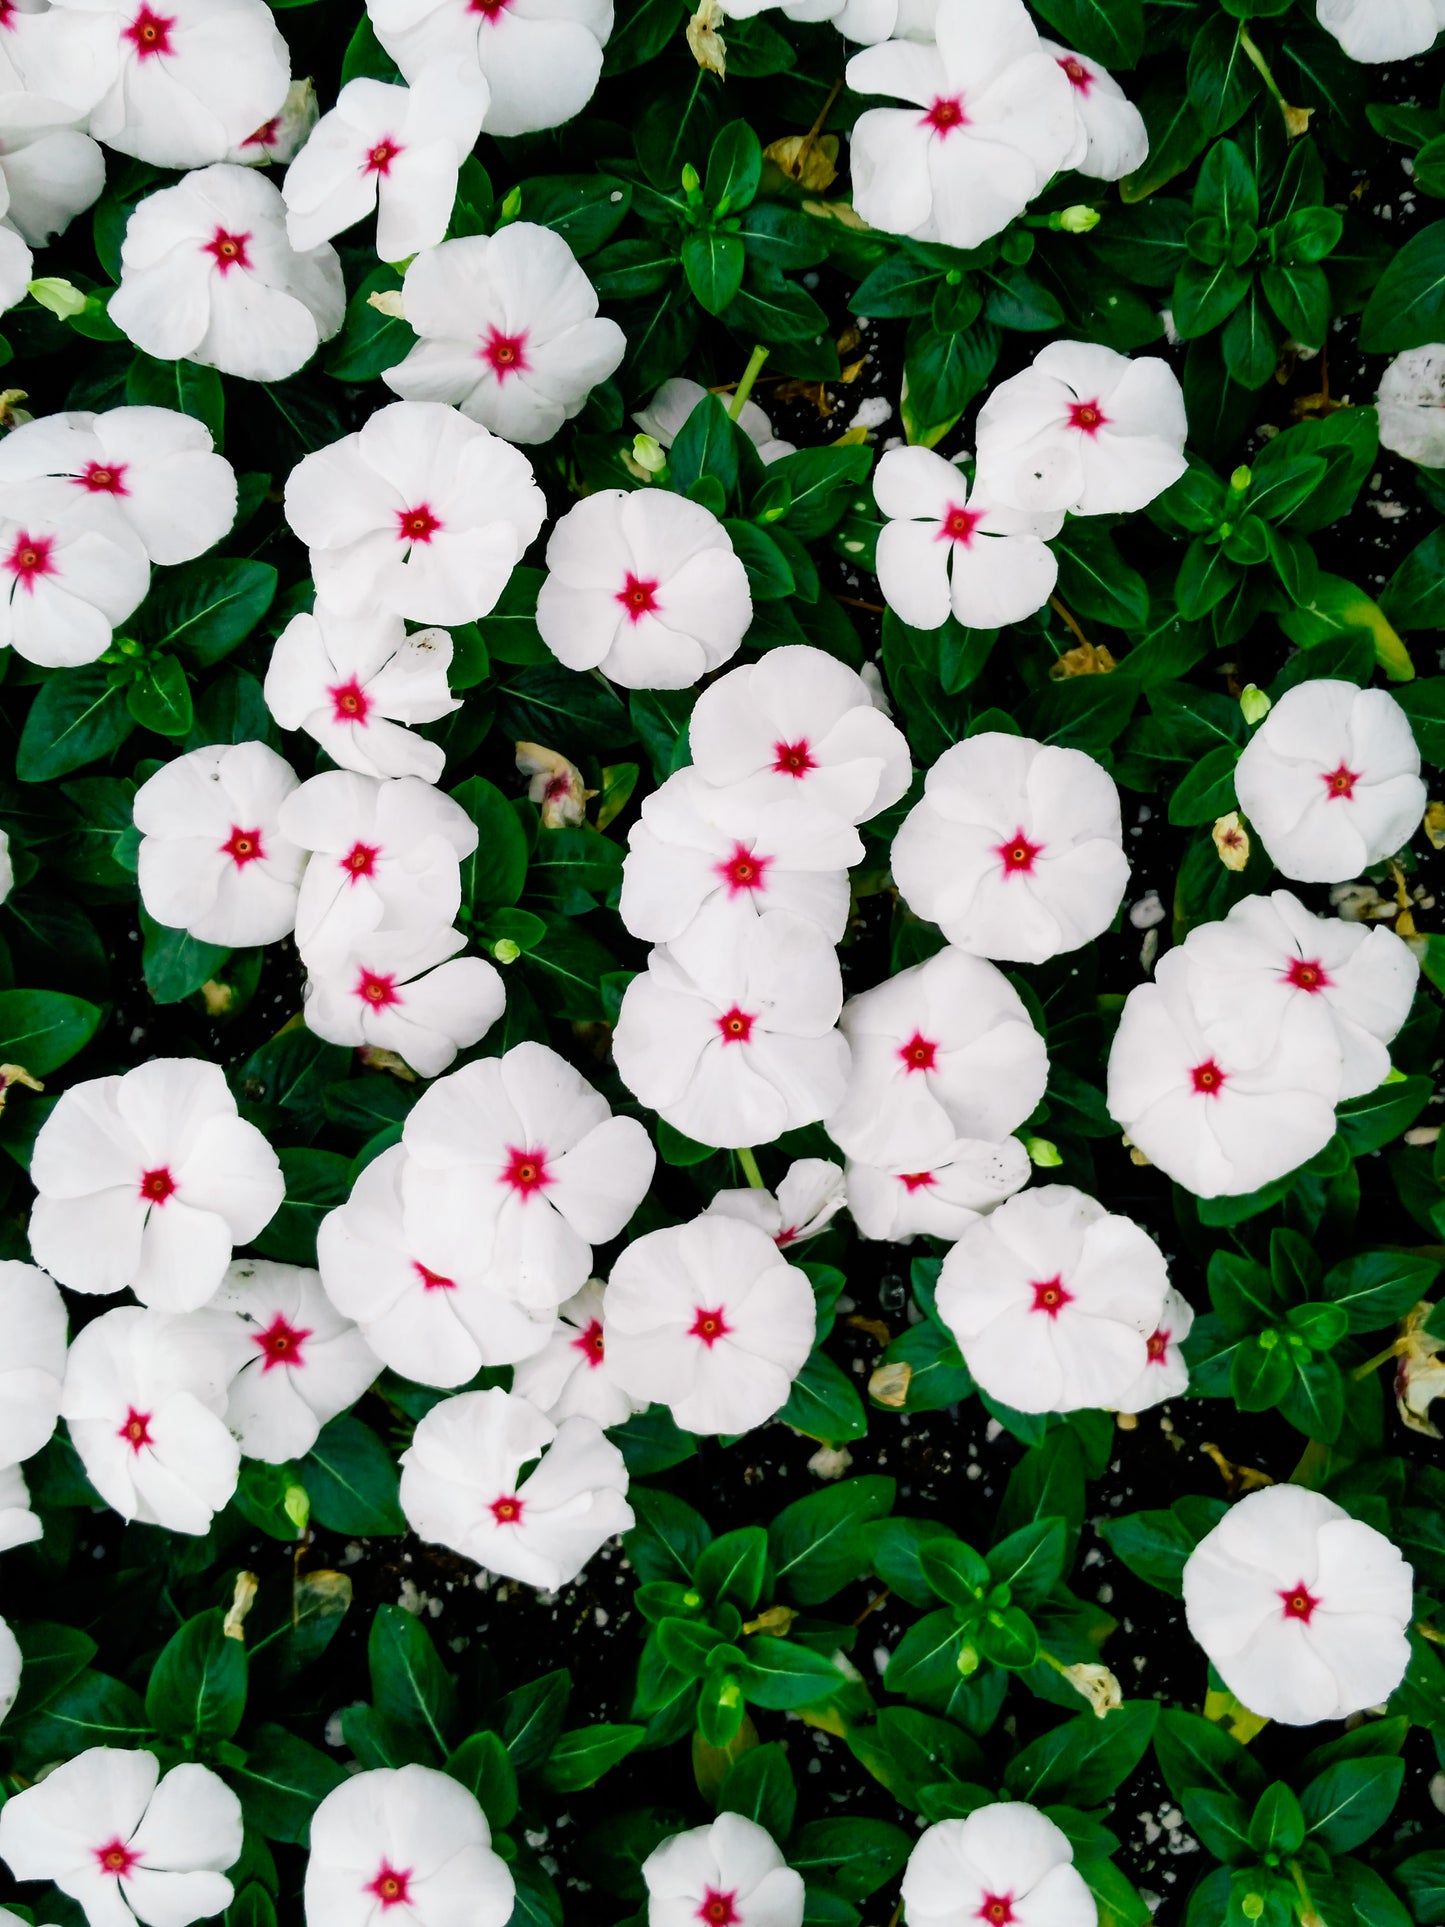 100 BRIGHT EYES PERIWINKLE Vinca Rosea Dwarf White & Pink Flower Seeds